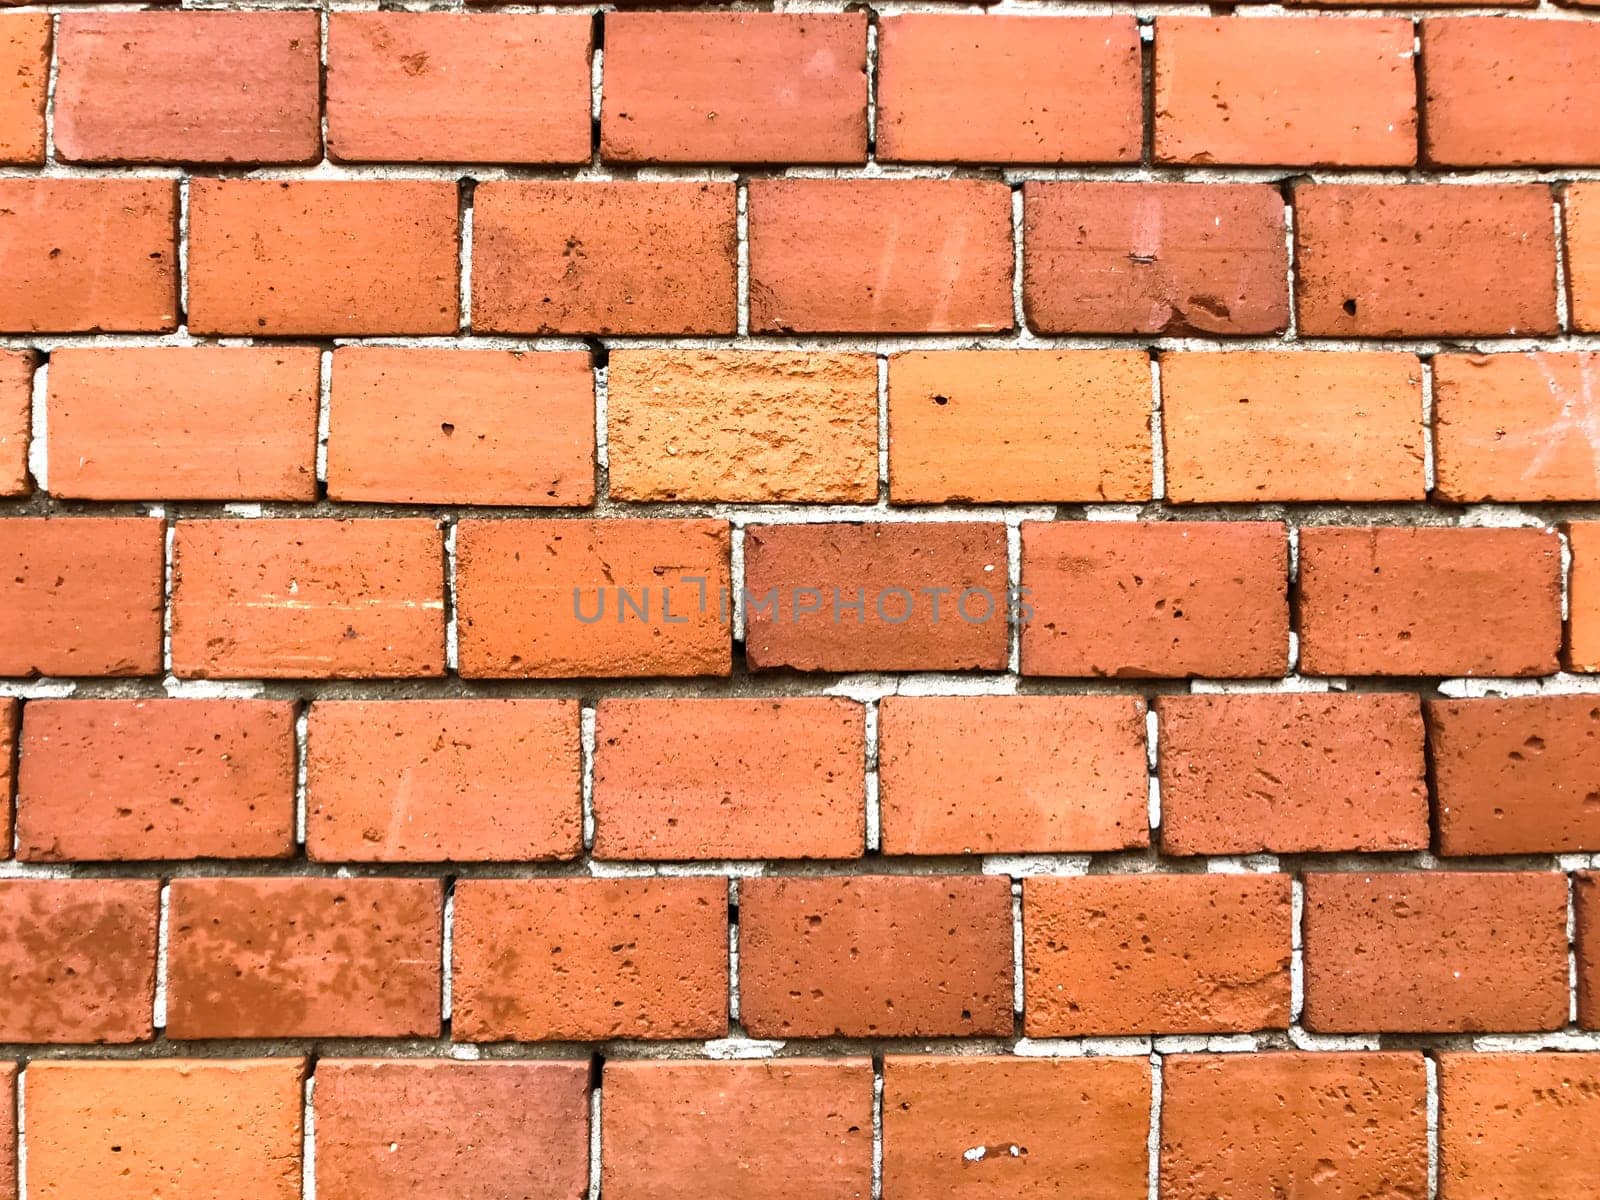 A brick wall with a white border by Alla_Morozova93